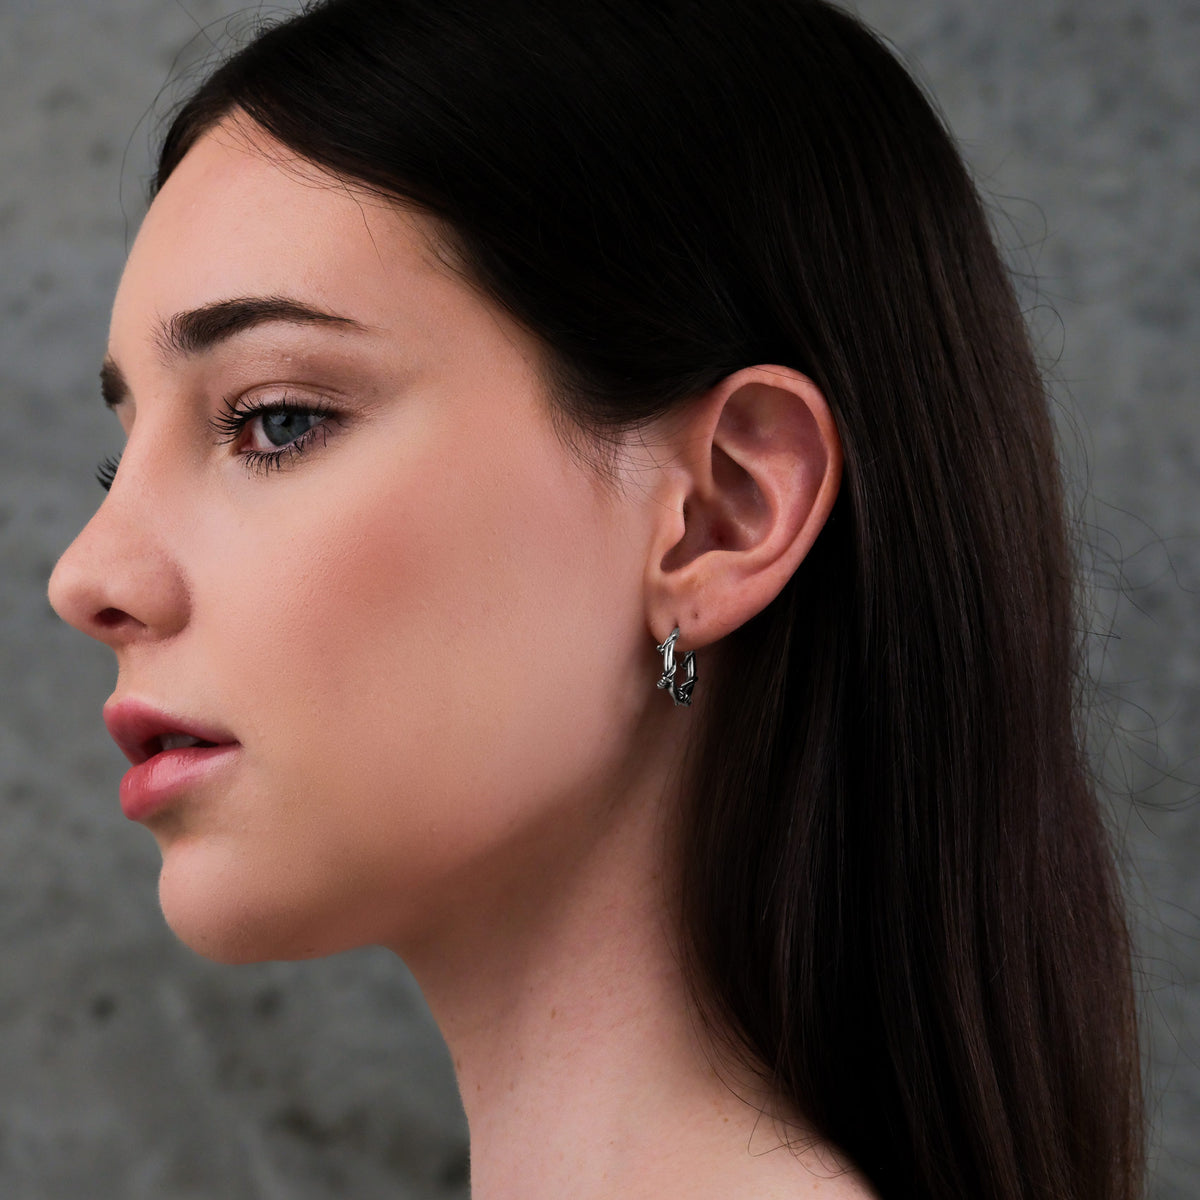 Punk earrings for women in silver